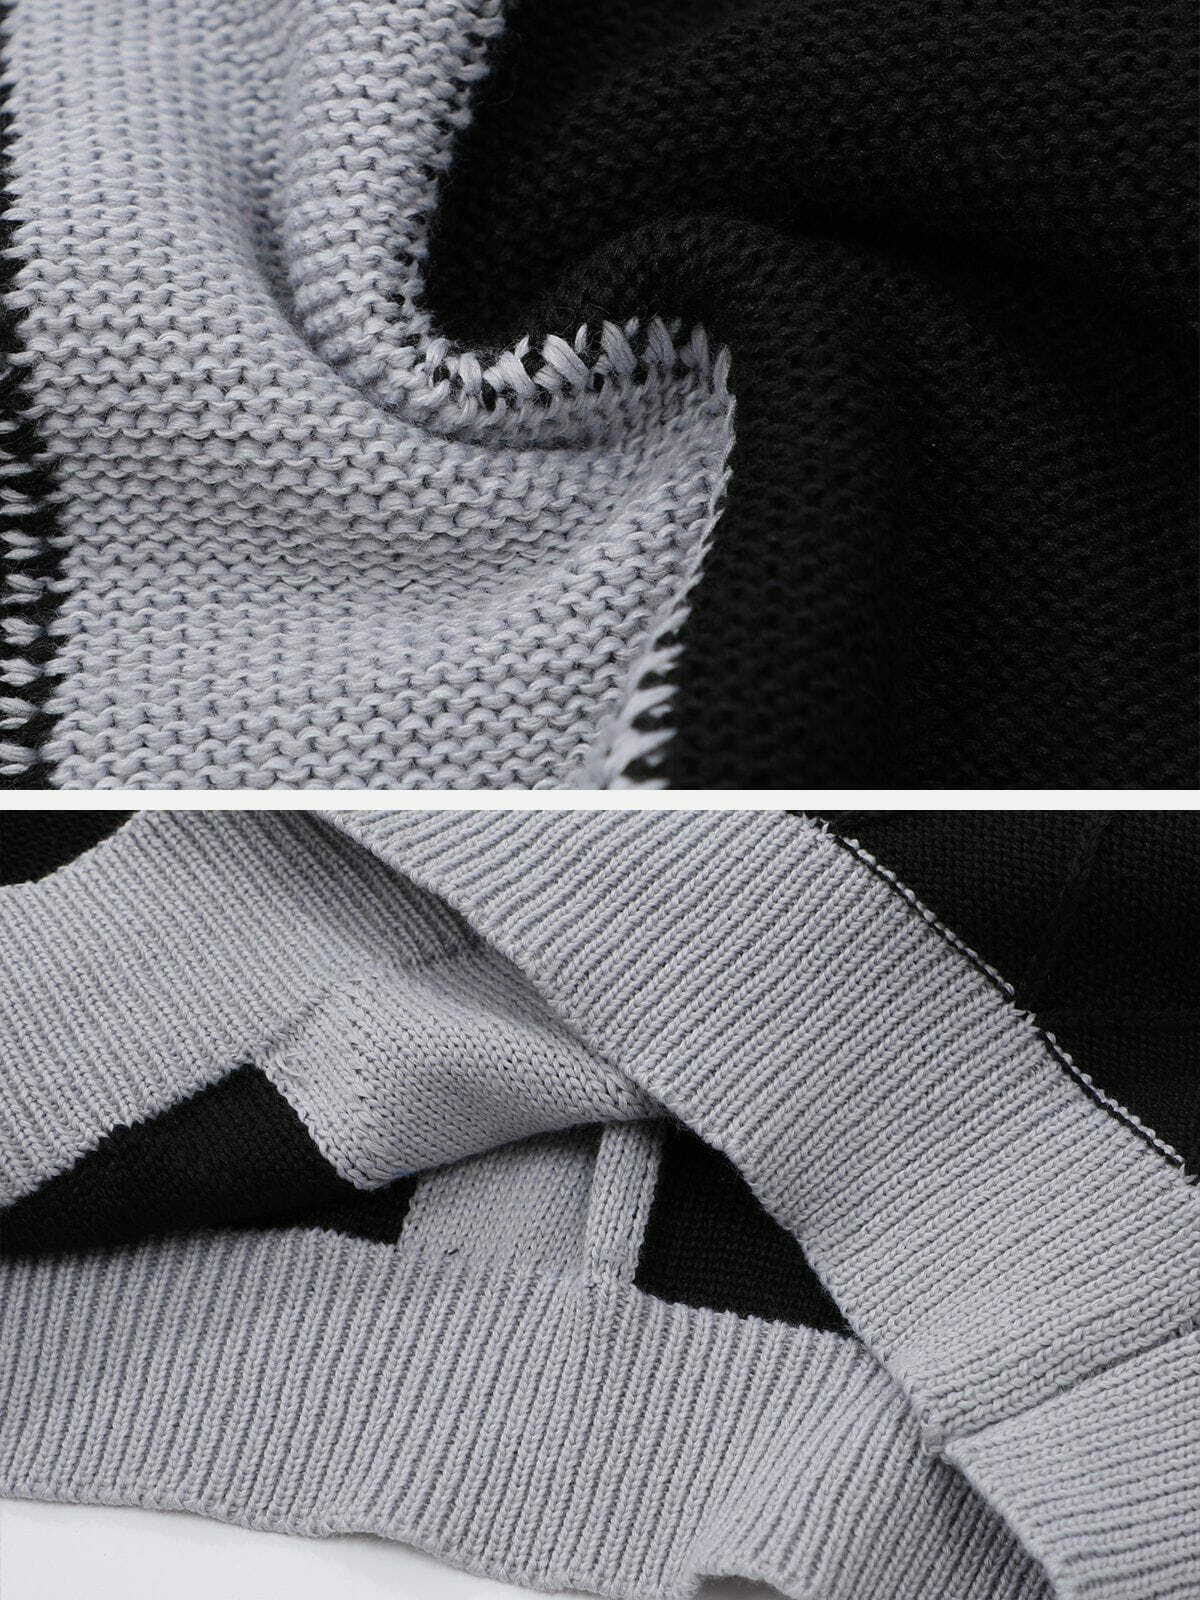 patchwork cross hoodie edgy & urban streetwear 5153